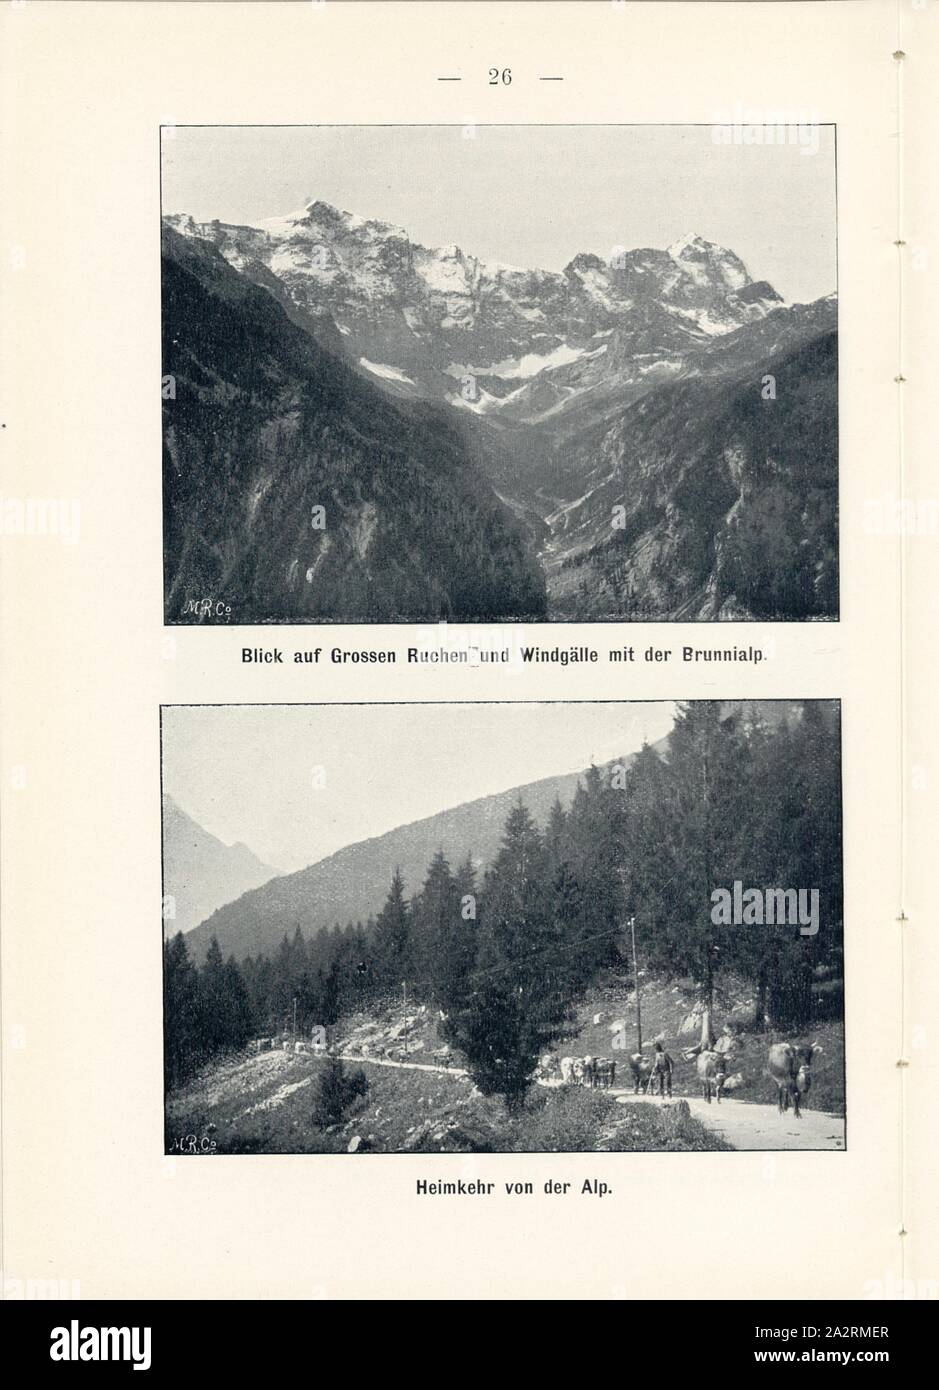 View of Great Ruchen and Windgälle with the Brunnialp and homecoming from the Alp, Glarus Alps, Signed: M.R.C, Fig. 24, p. 26, Meisenbach, Riffarth und Co. (imp.), 1900, J. Knobel: Illustrierter Reisebegleiter für die Alpenstrasse des Klausen und ihre Zufahrtslinien. Glarus: Buchdruckerei J. Spälti, 1900 Stock Photo